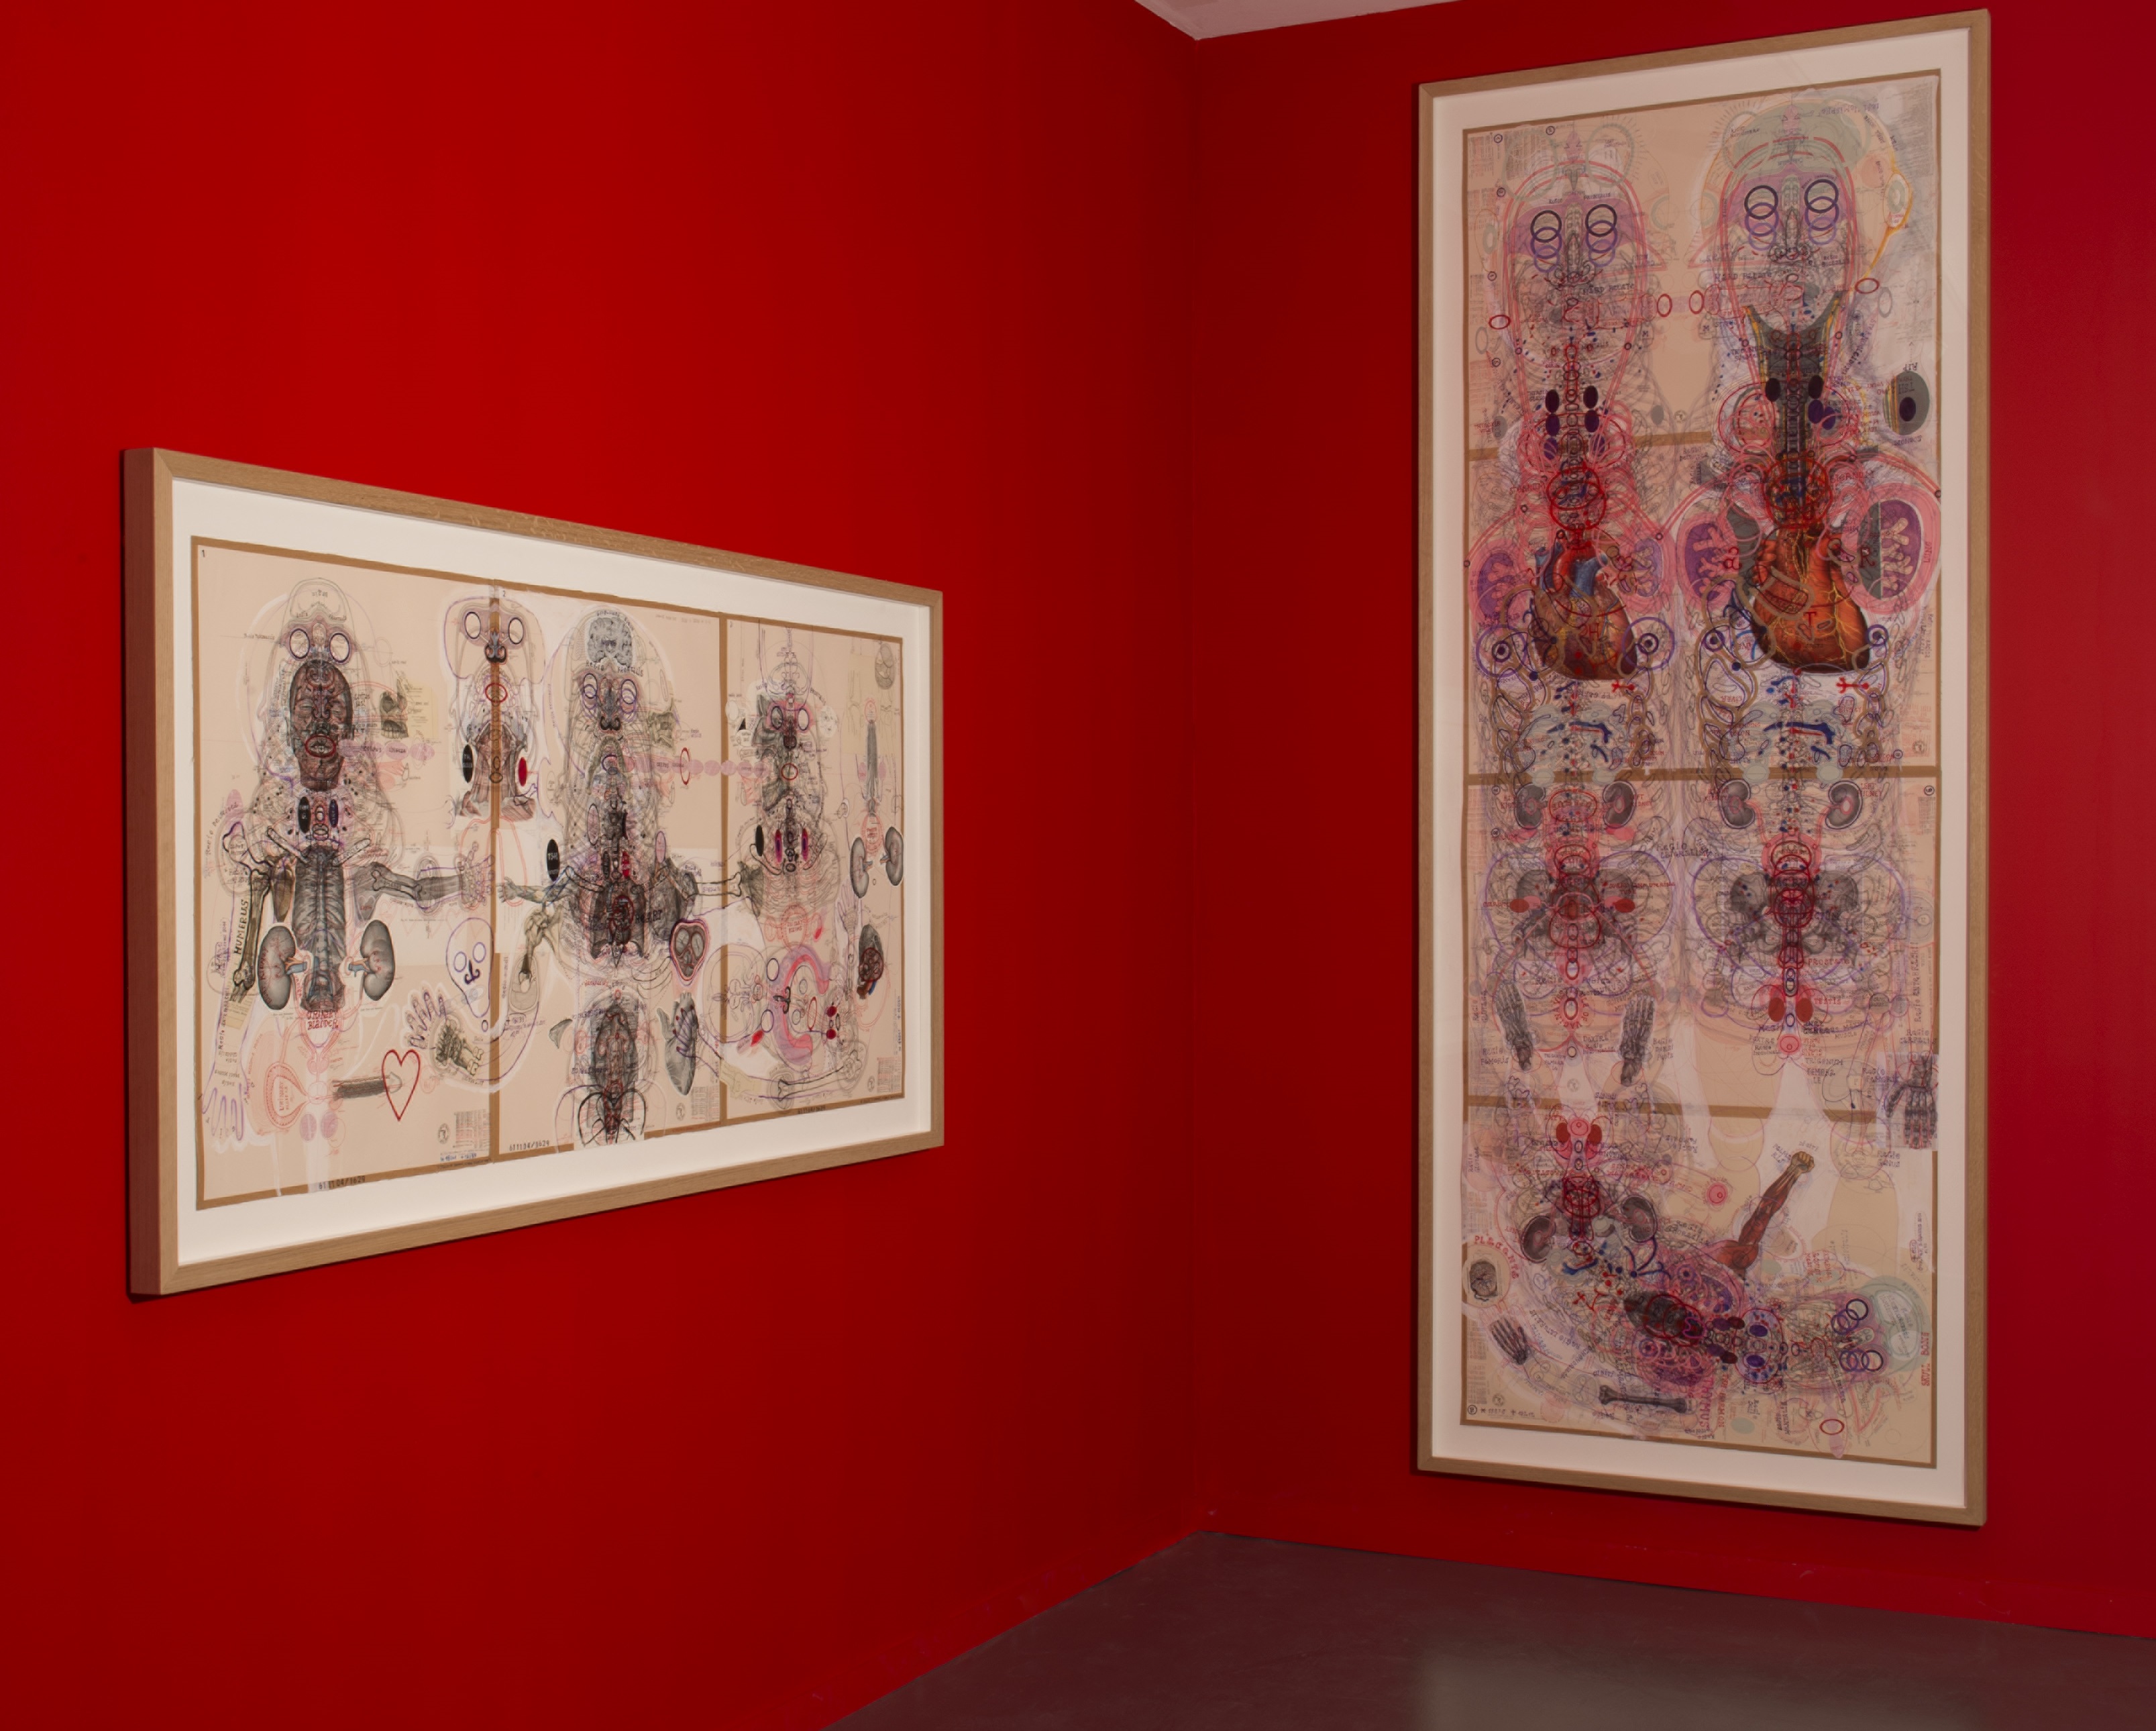 Vue de l'exposition de la collection de Bruno Decharme, Art Brut / collection ABCD © Marc Domage / la maison rouge, 2014-2015